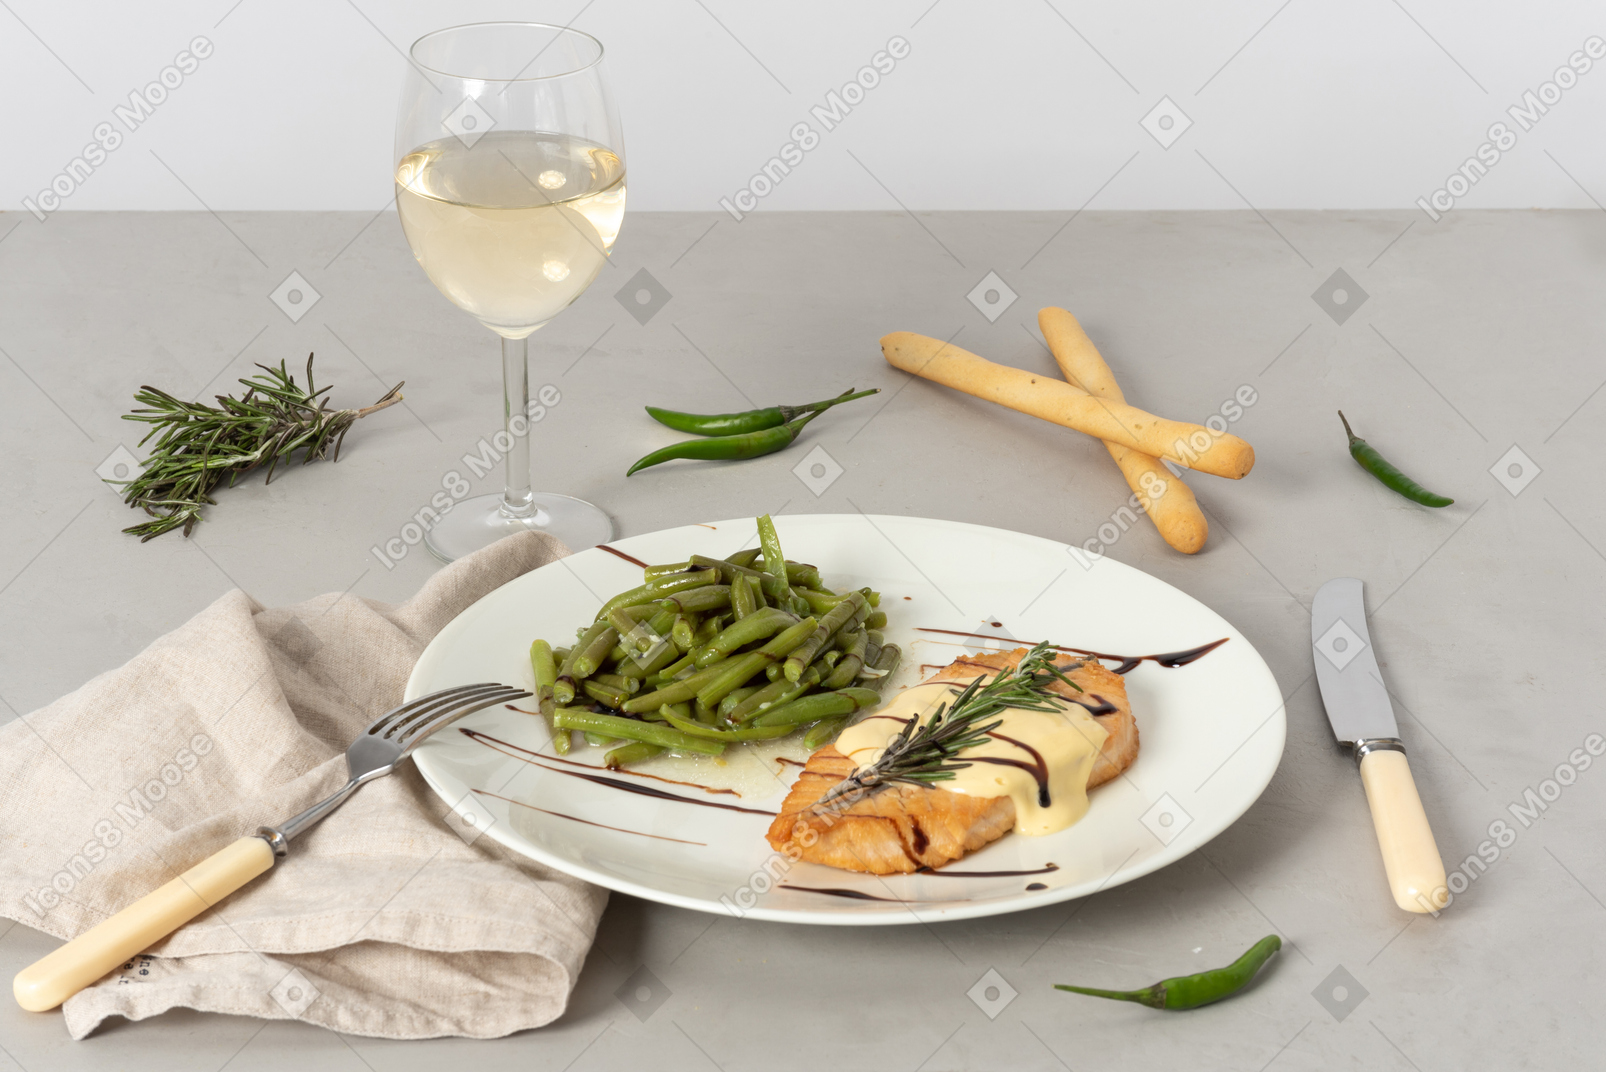 Prato de peixe e vagem, copo de vinho branco, grissini, garfo e faca